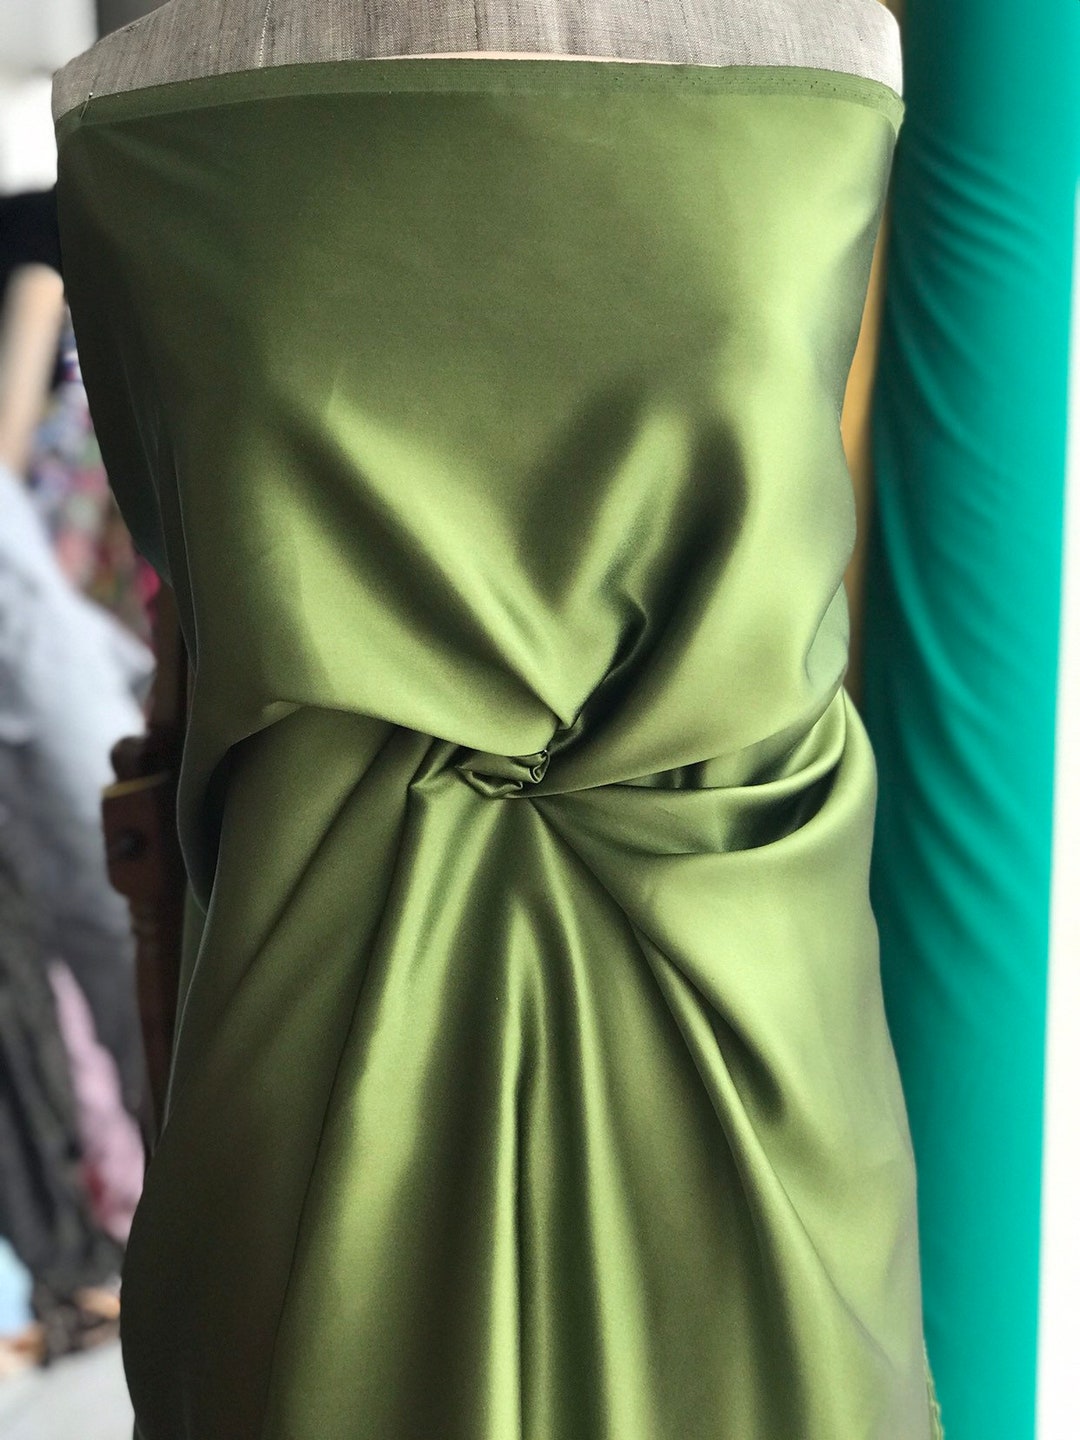 NY Designer Fabrics Dark Green Olive Silk Duchess Satin Fabric